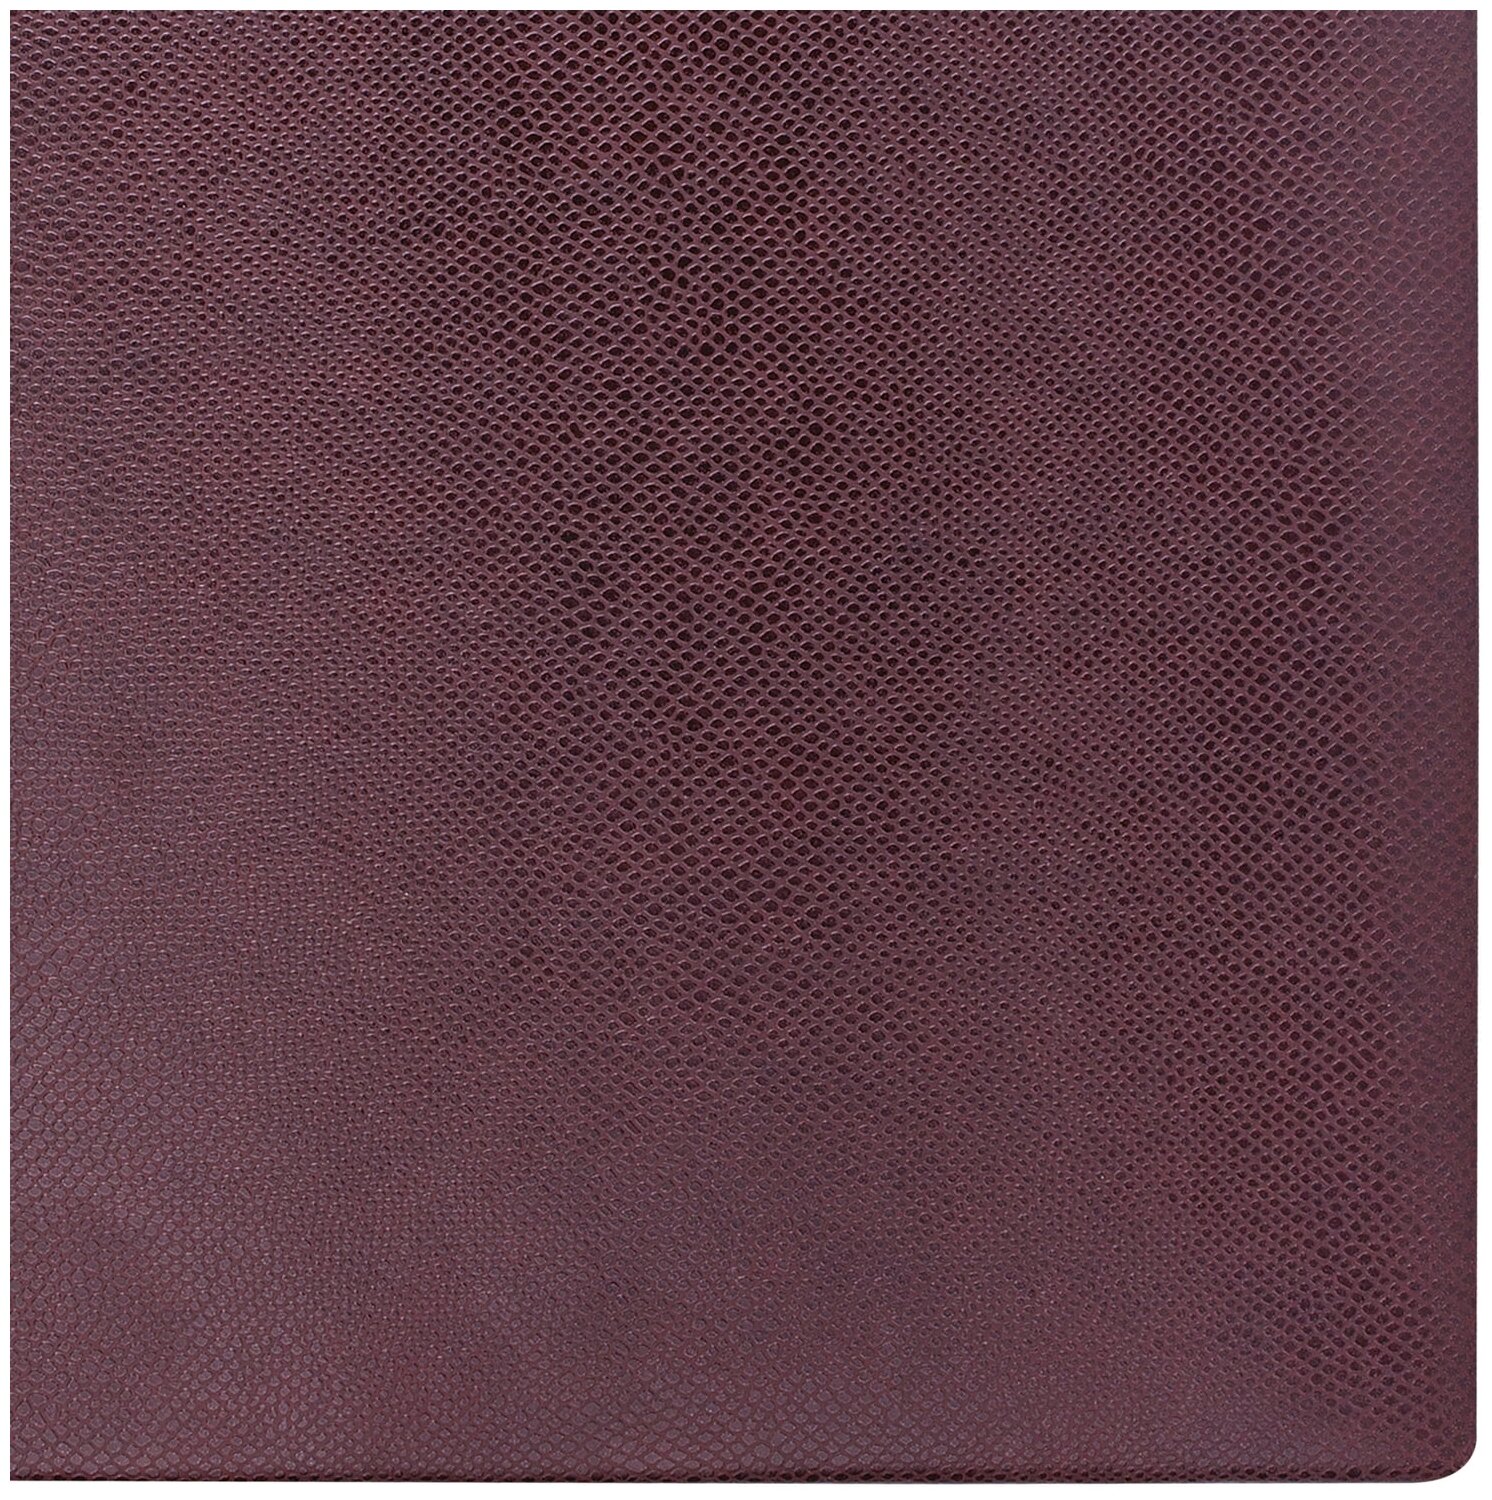 Блокноты Blankster Ежедневник недатированный А6 Brauberg (160 листов) обложка кожзам, коричневая под змеиную кожу (125105)